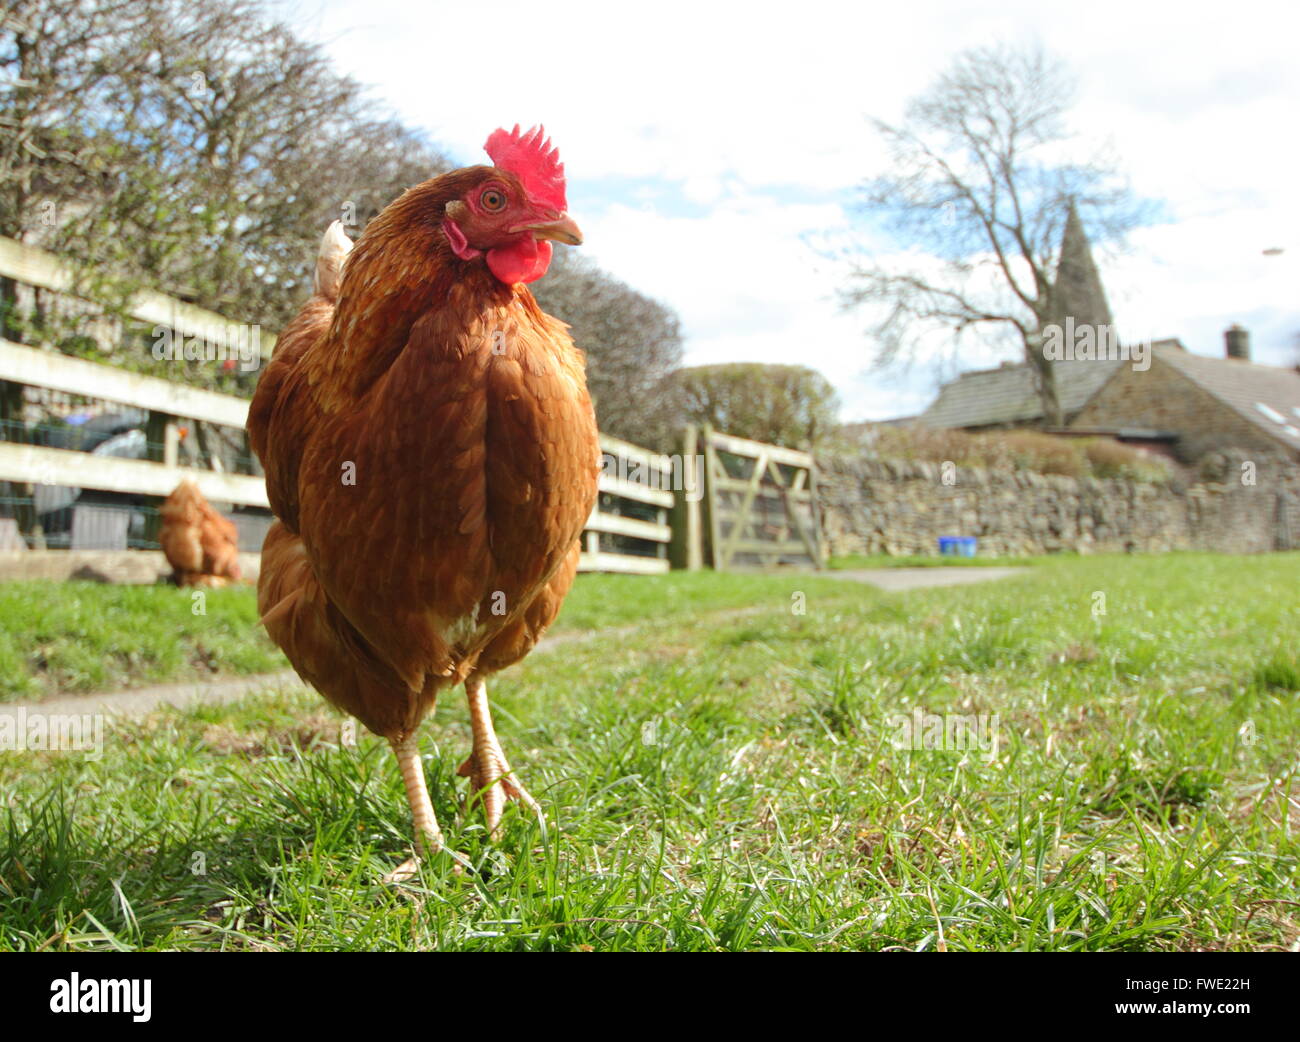 Un intervalo libre de itinerancia de pollo en un campo de hierba en la aldea de la esperanza, el Peak District National Park, Derbyshire, Inglaterra Foto de stock